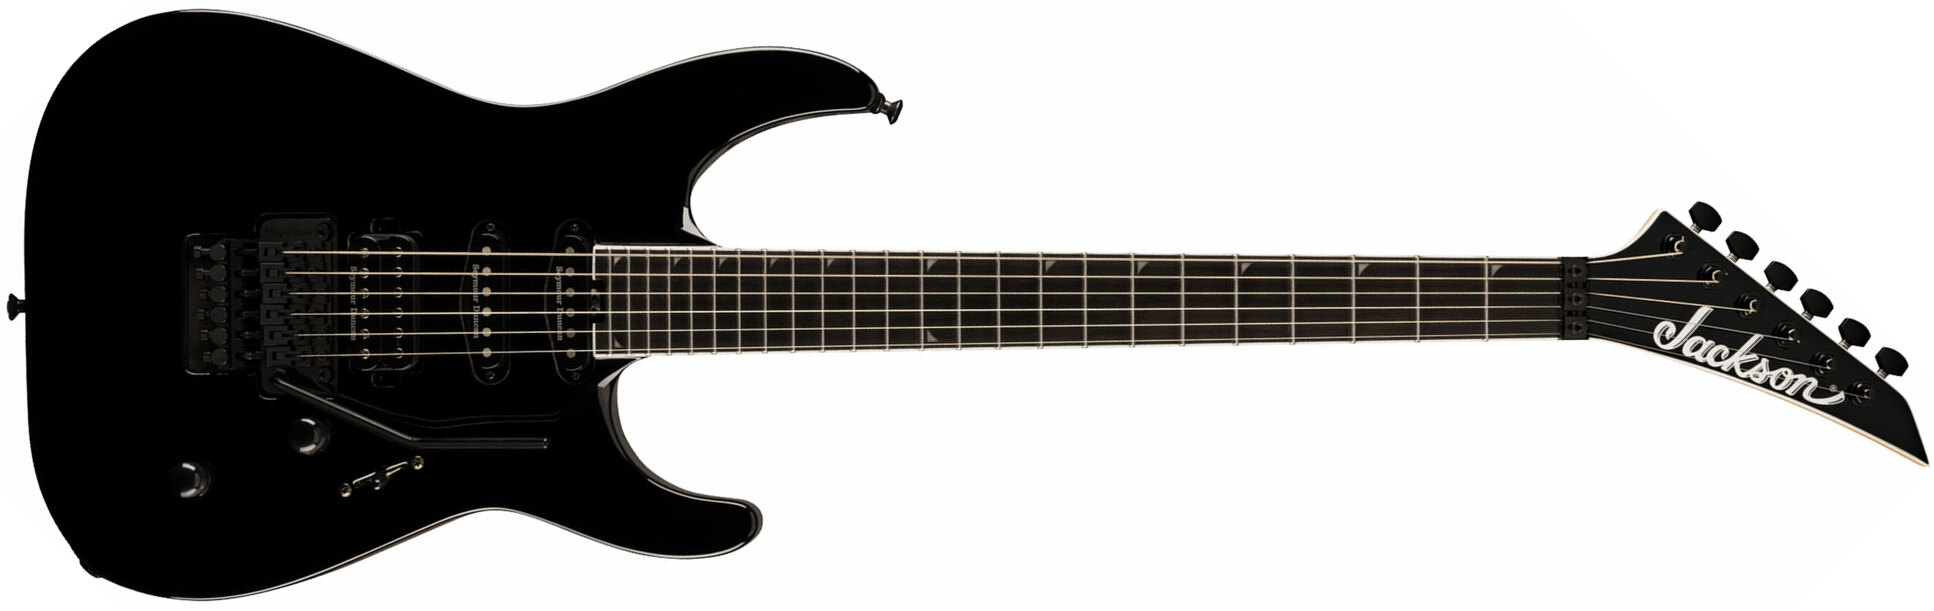 Jackson Soloist Sla3 Pro Plus Hss Seymour Duncan Fr Eb - Deep Black - Str shape electric guitar - Main picture